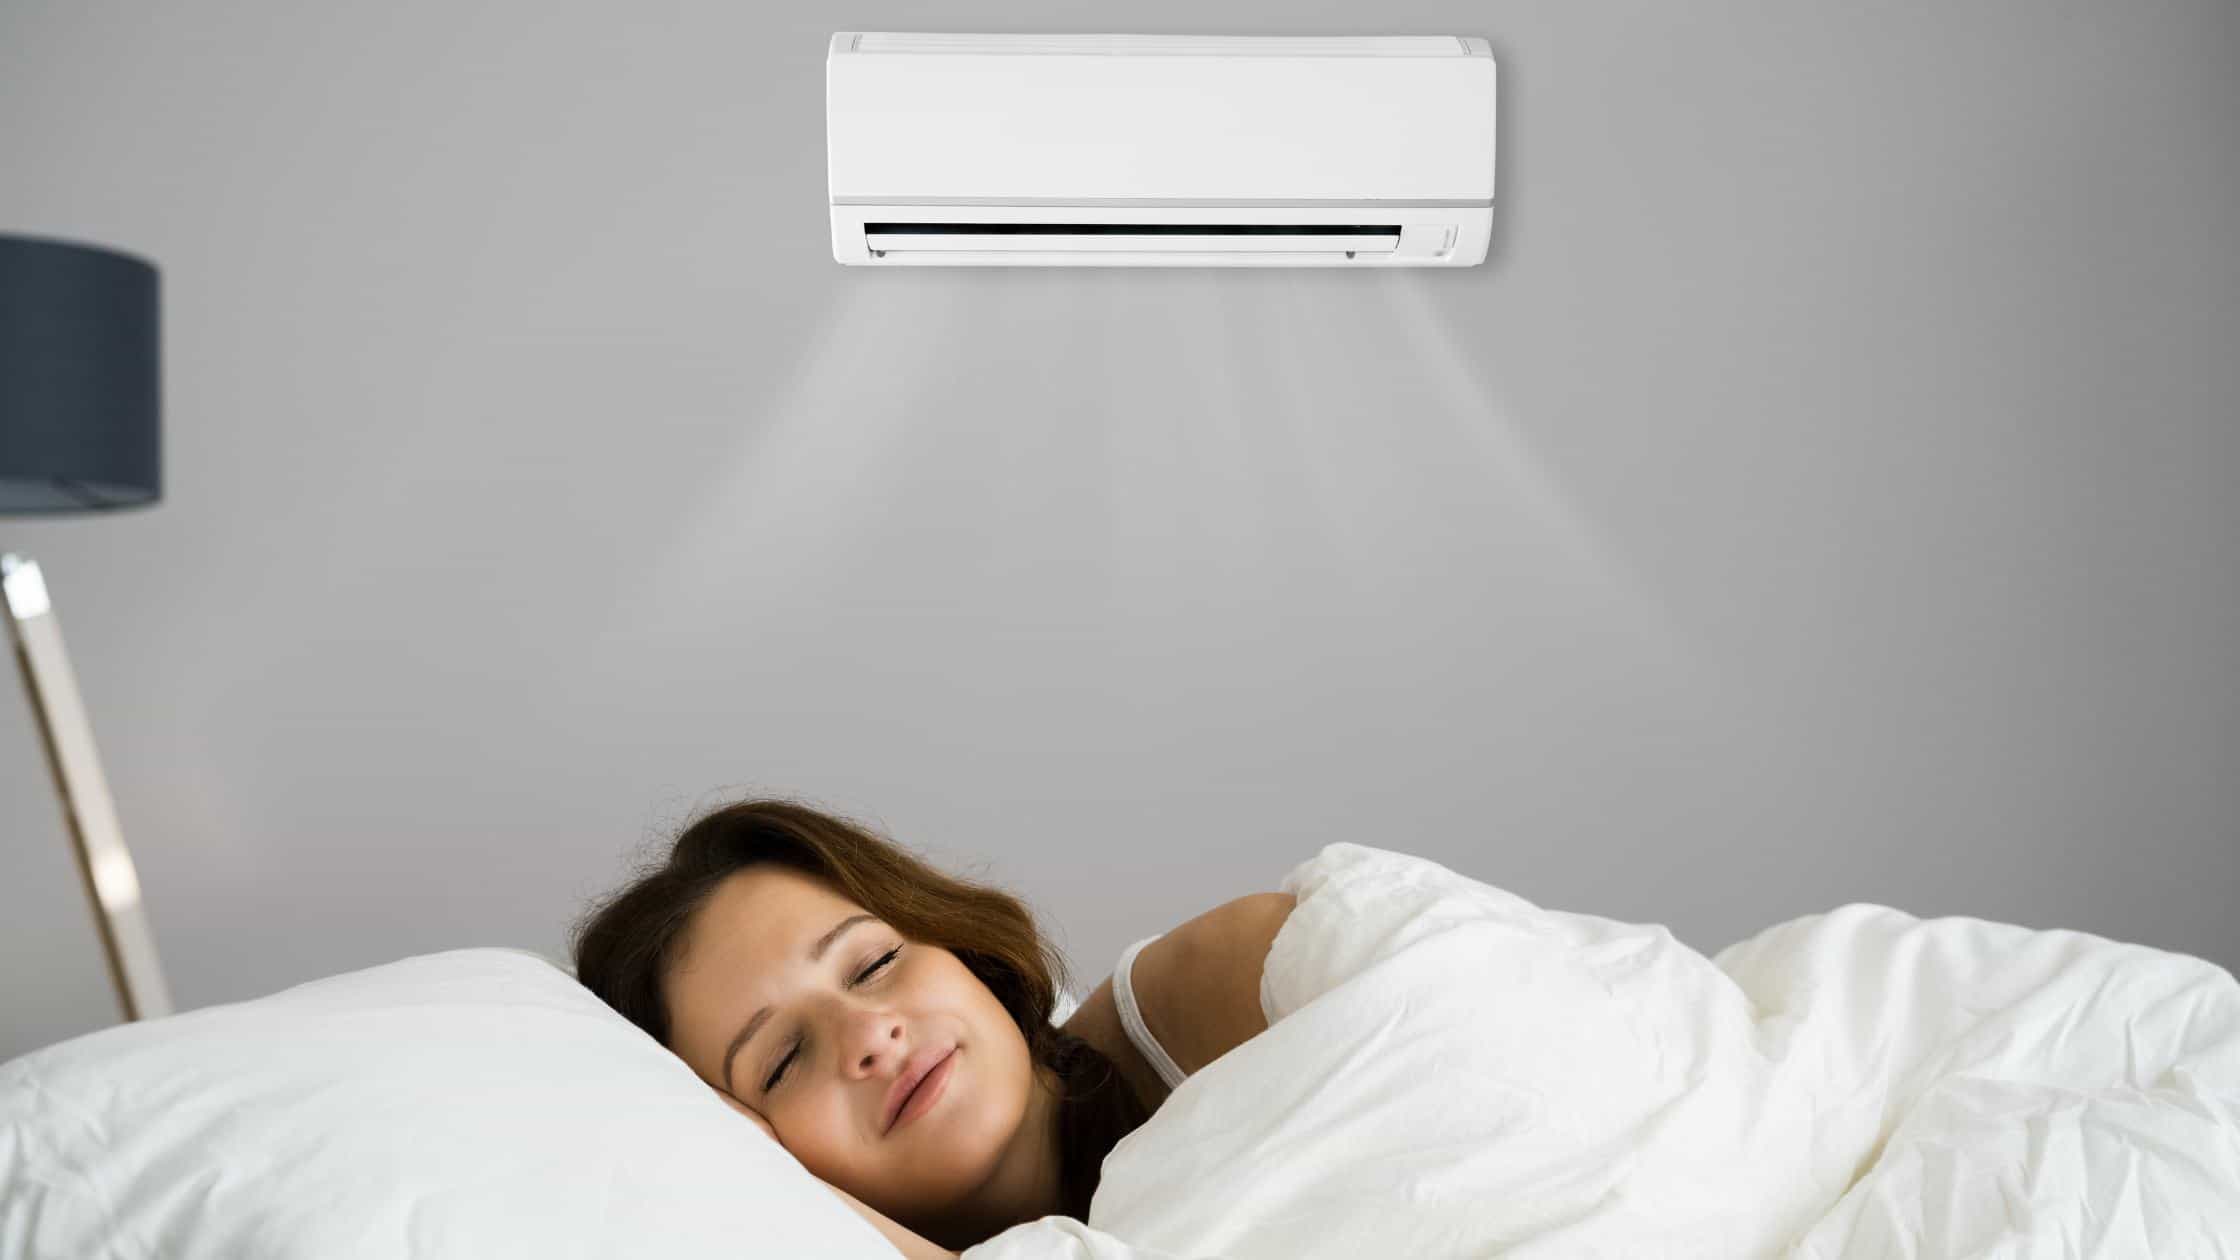 Best Quietest Air Conditioner